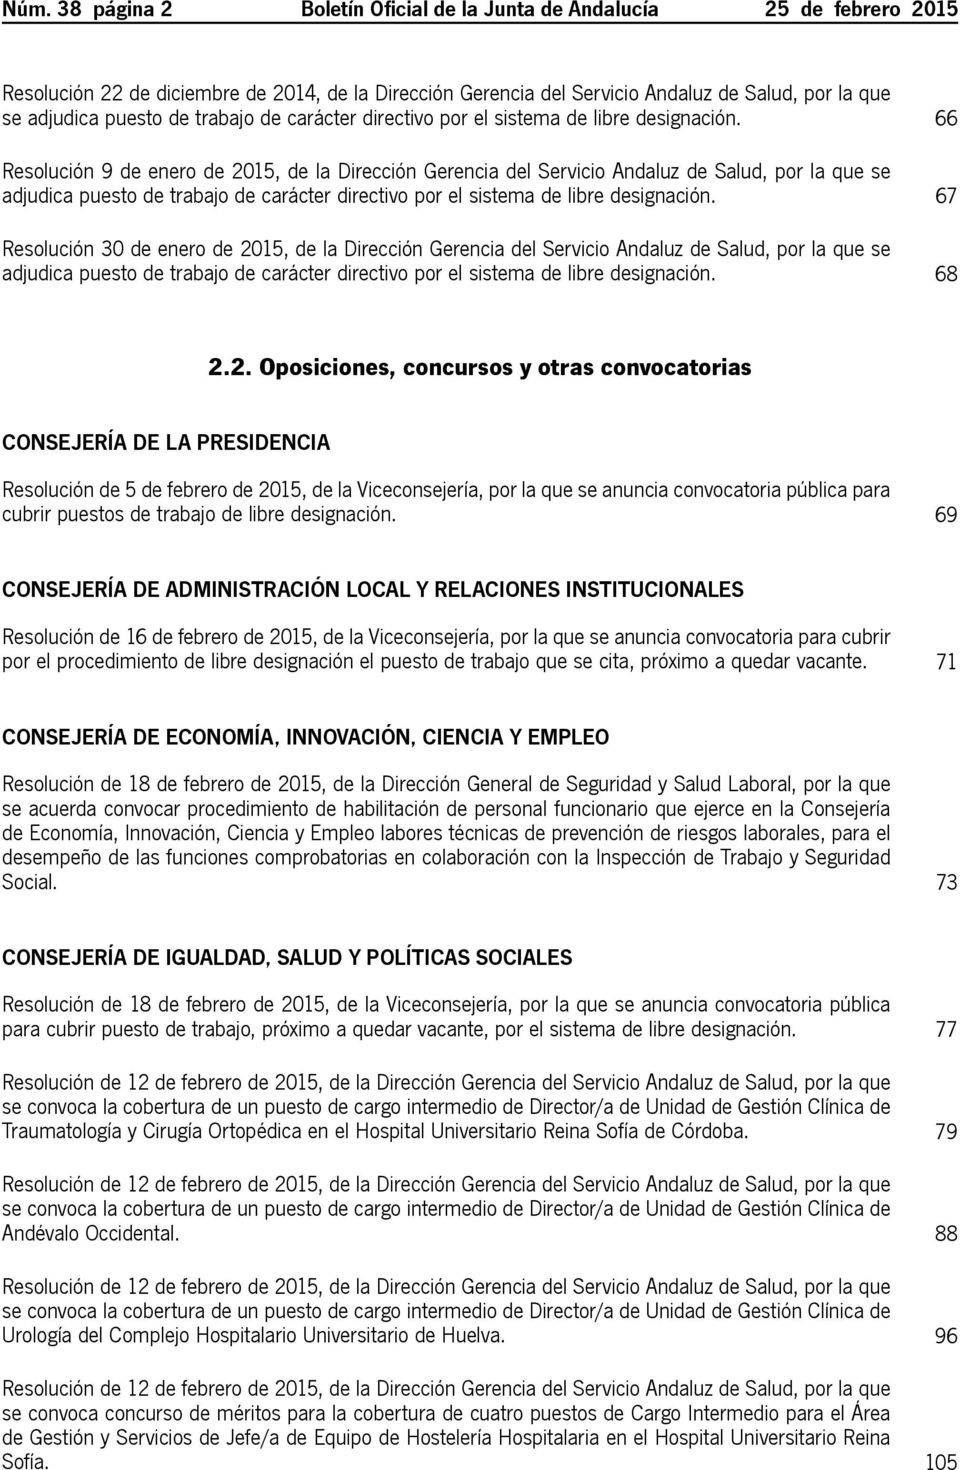 66 Resolución 9 de enero de 2015, de la Dirección Gerencia del Servicio Andaluz de Salud, por la que se adjudica puesto  67 Resolución 30 de enero de 2015, de la Dirección Gerencia del Servicio